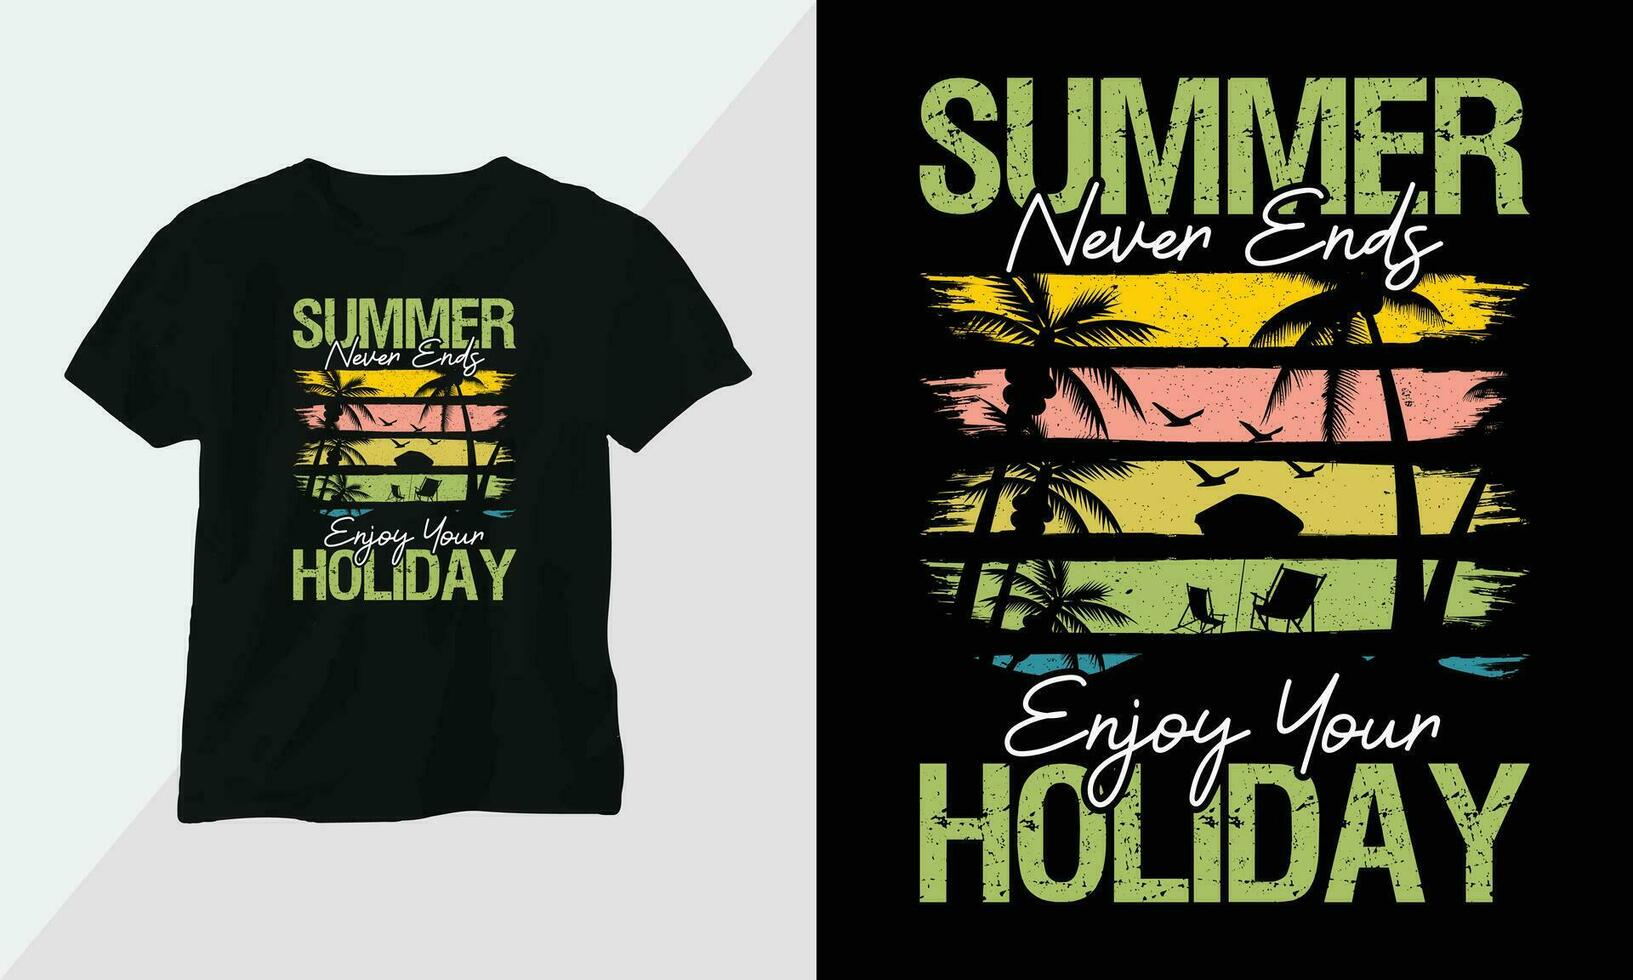 estate fare surf maglietta design concetto. tutti disegni siamo colorato e creato utilizzando tavola da surf, spiaggia, estate, mare, eccetera vettore